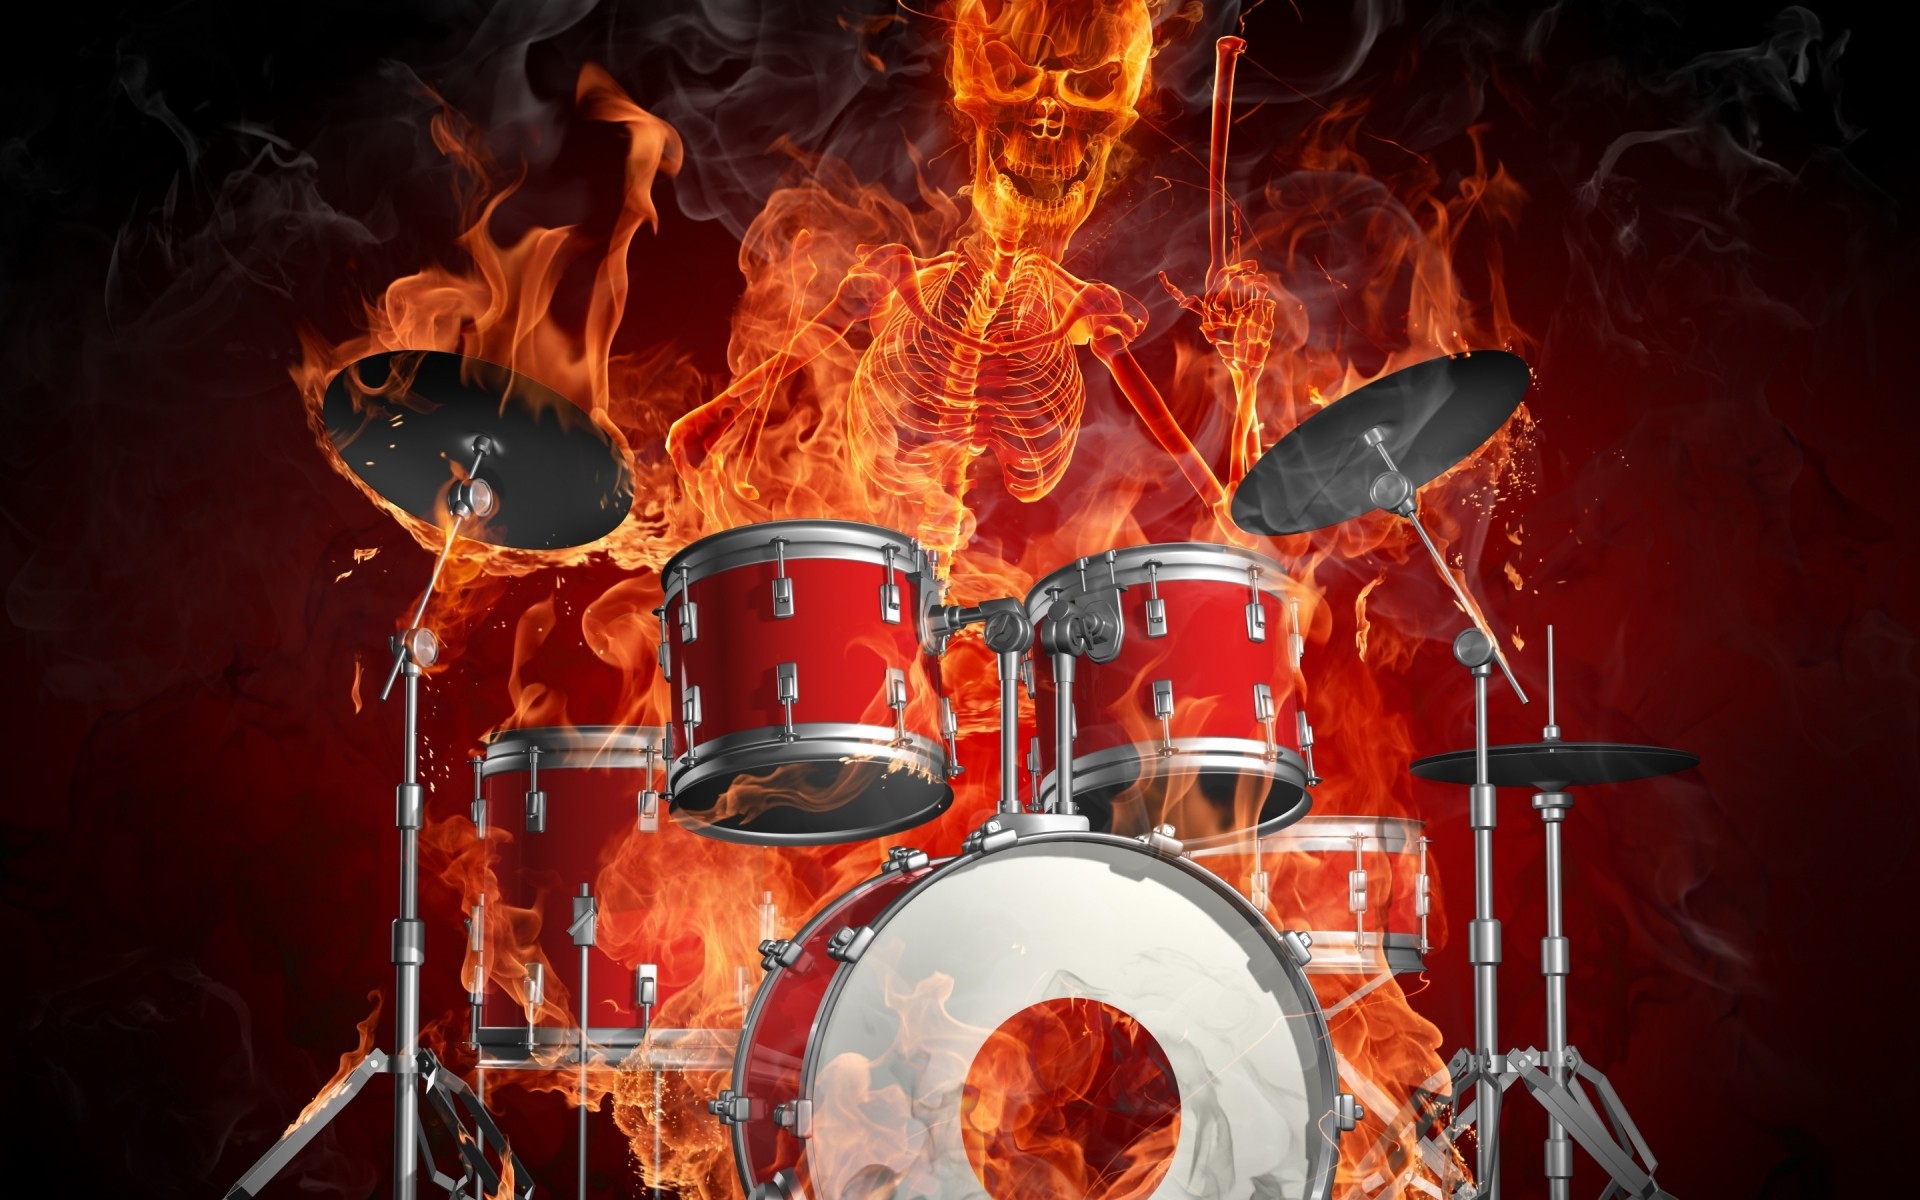 огненные барабан музыка ударный инструмент барабанщик музыкант производительности концерт группа фестиваль пламя